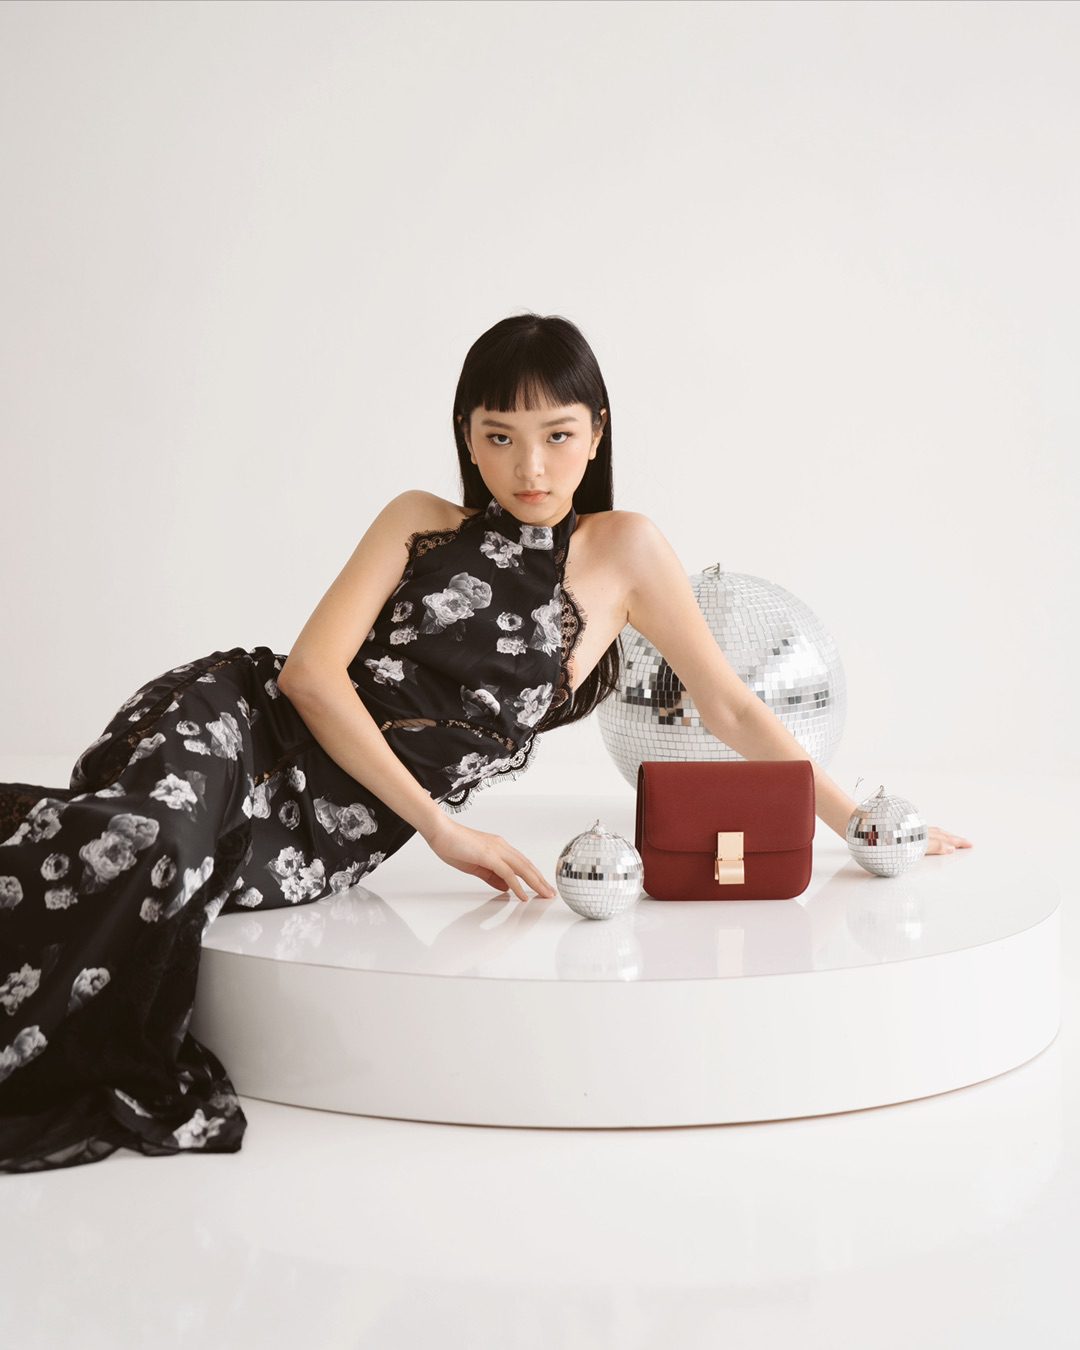 diamerlyn basic models singapore female fashion